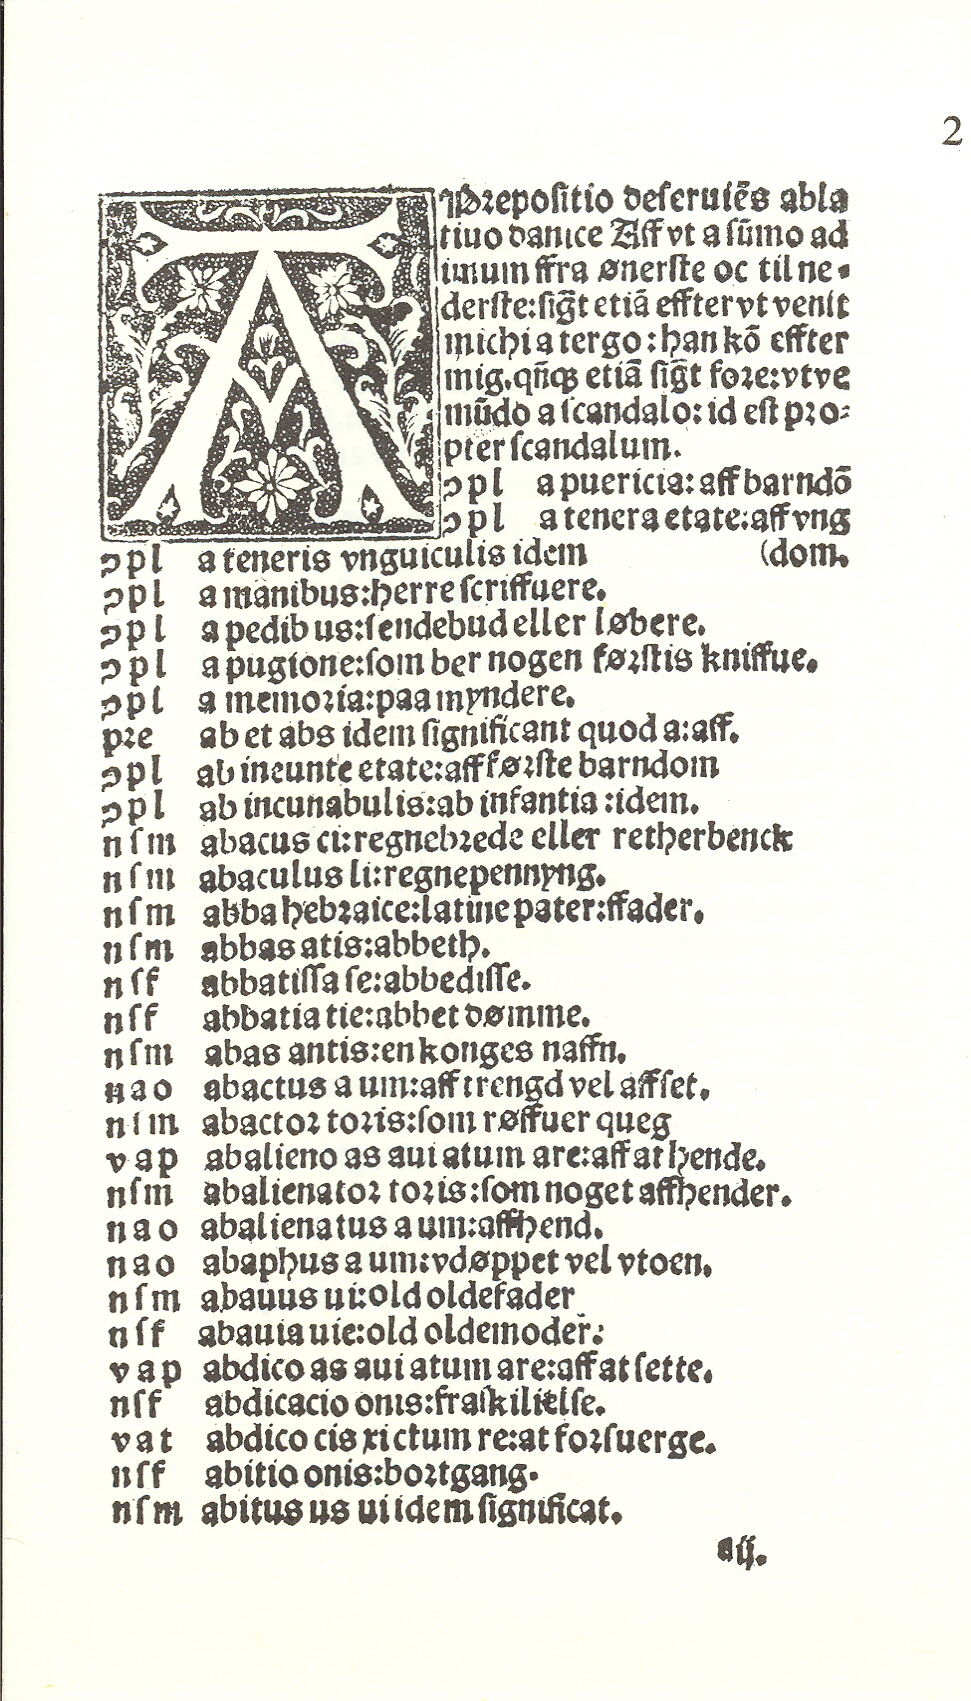 Pedersen 1510, Side: 1